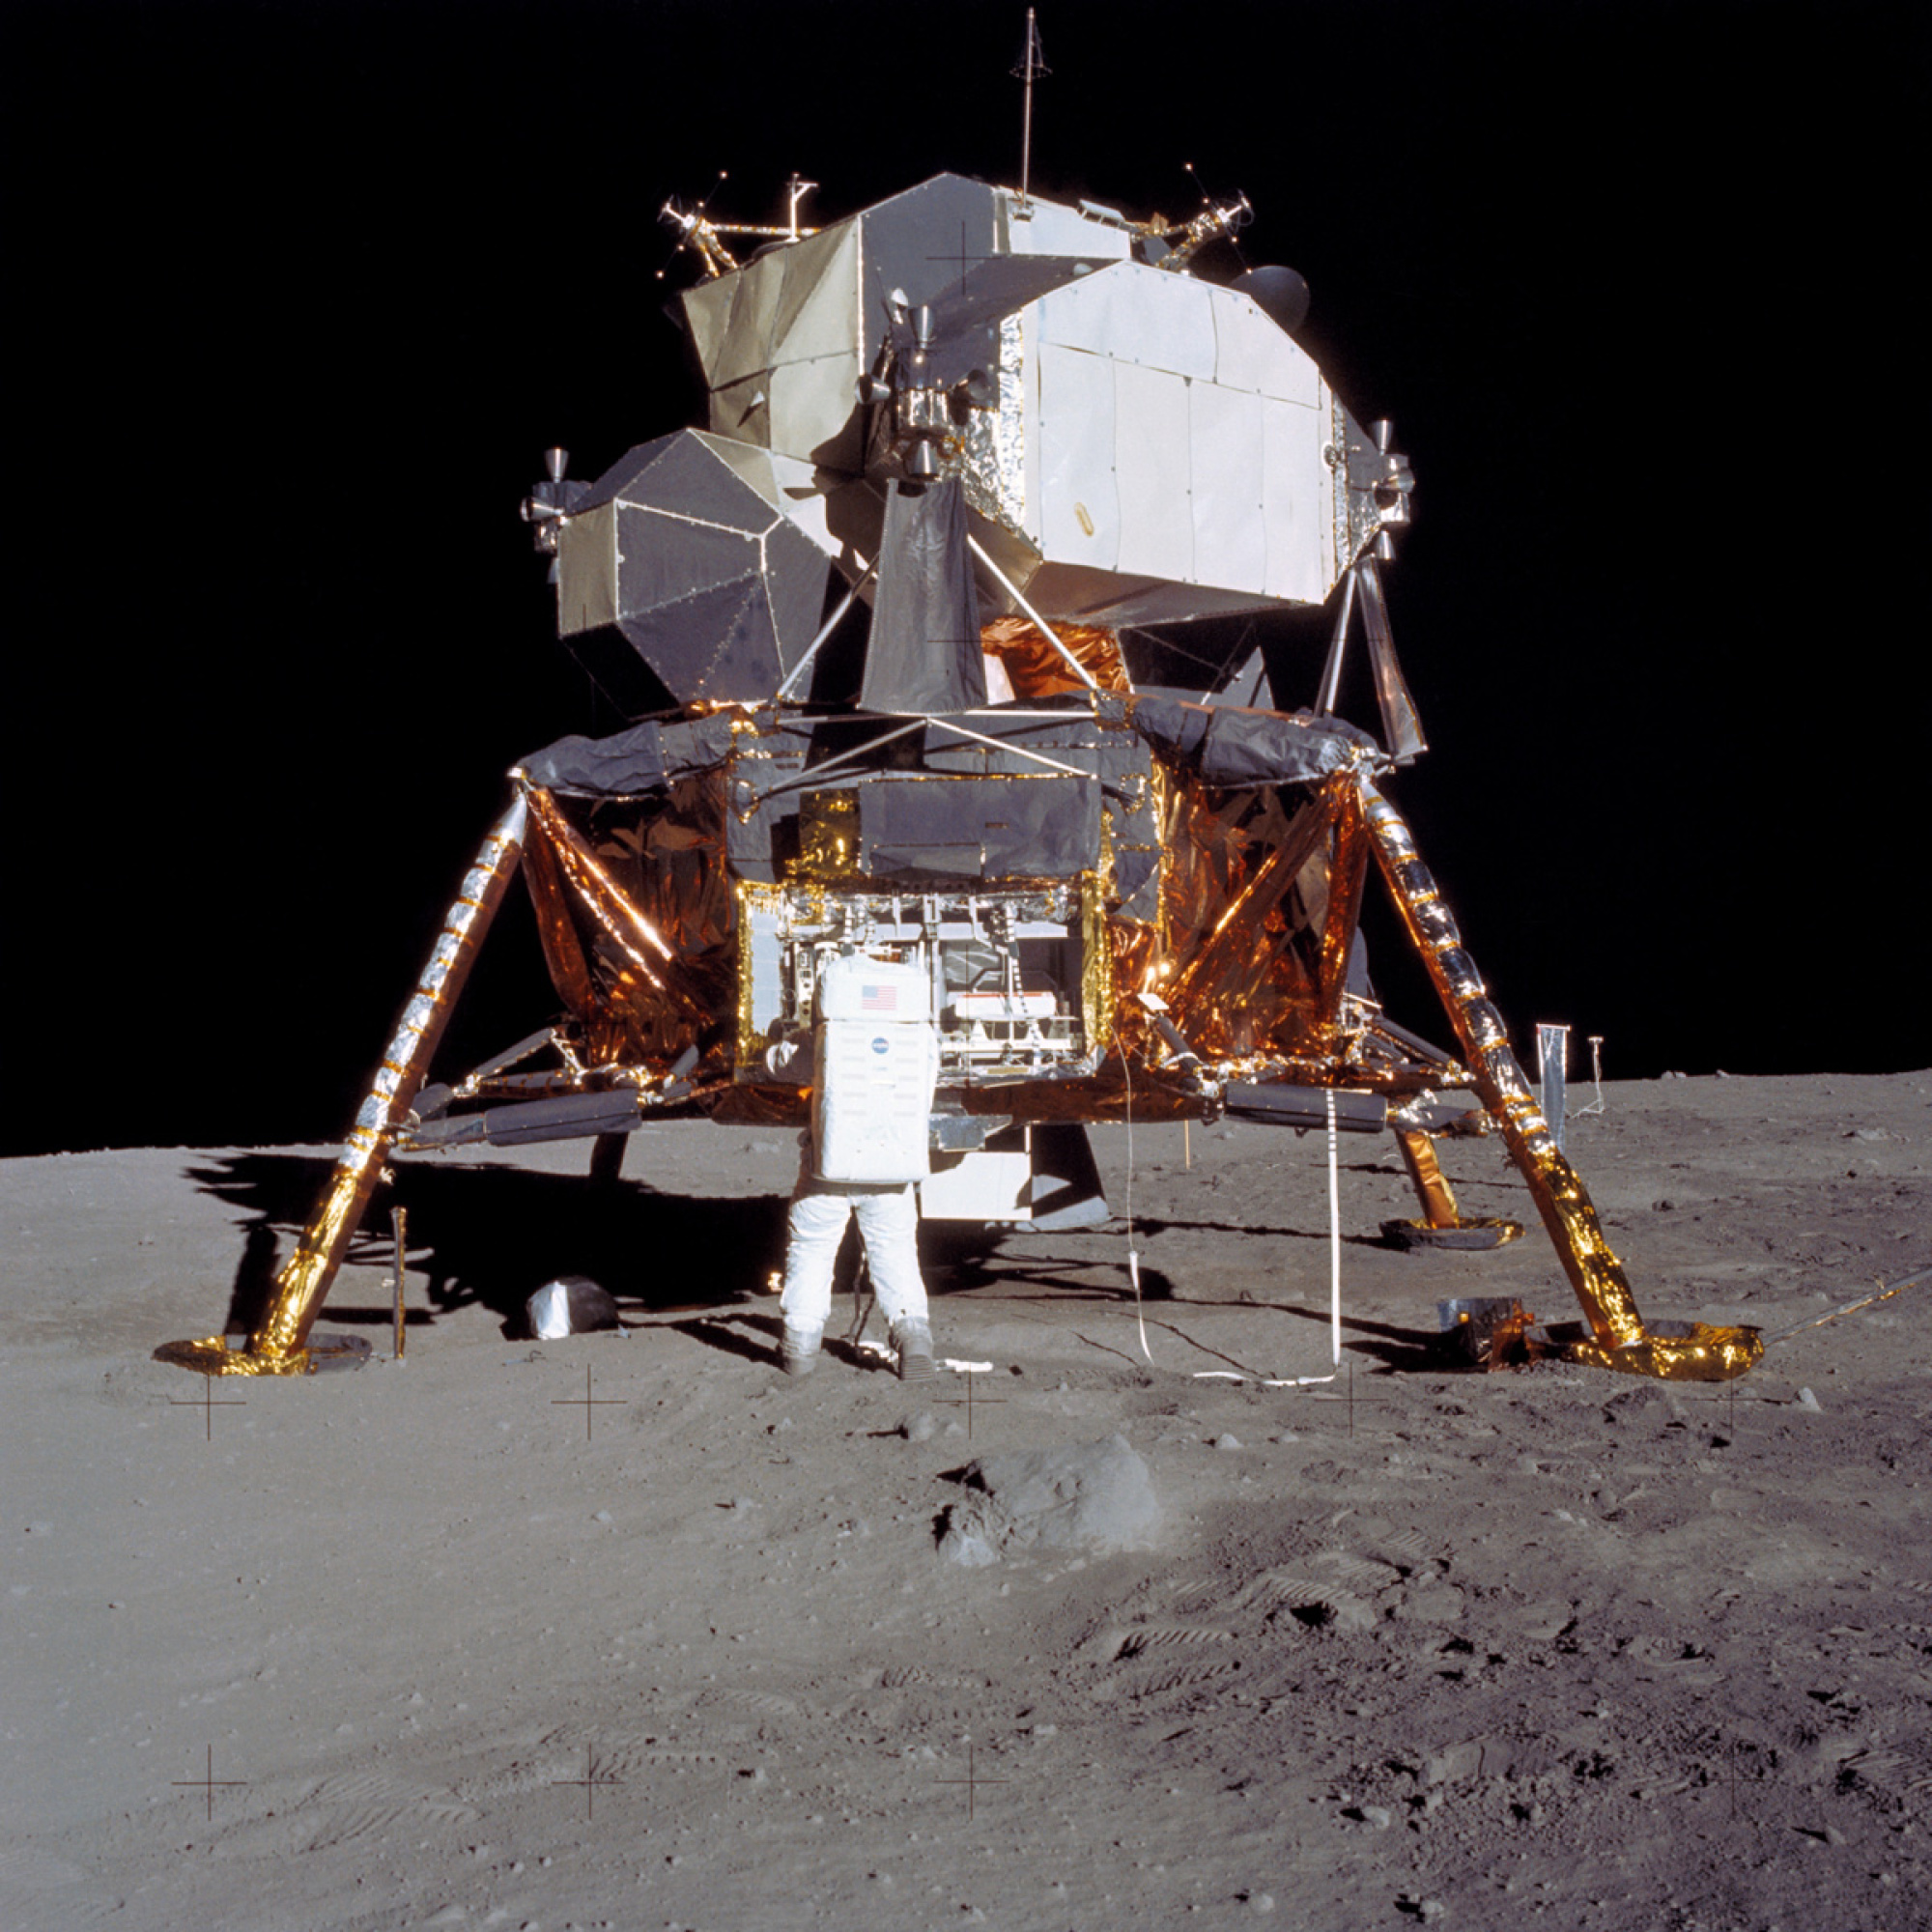 the Apollo 11 Lunar Module